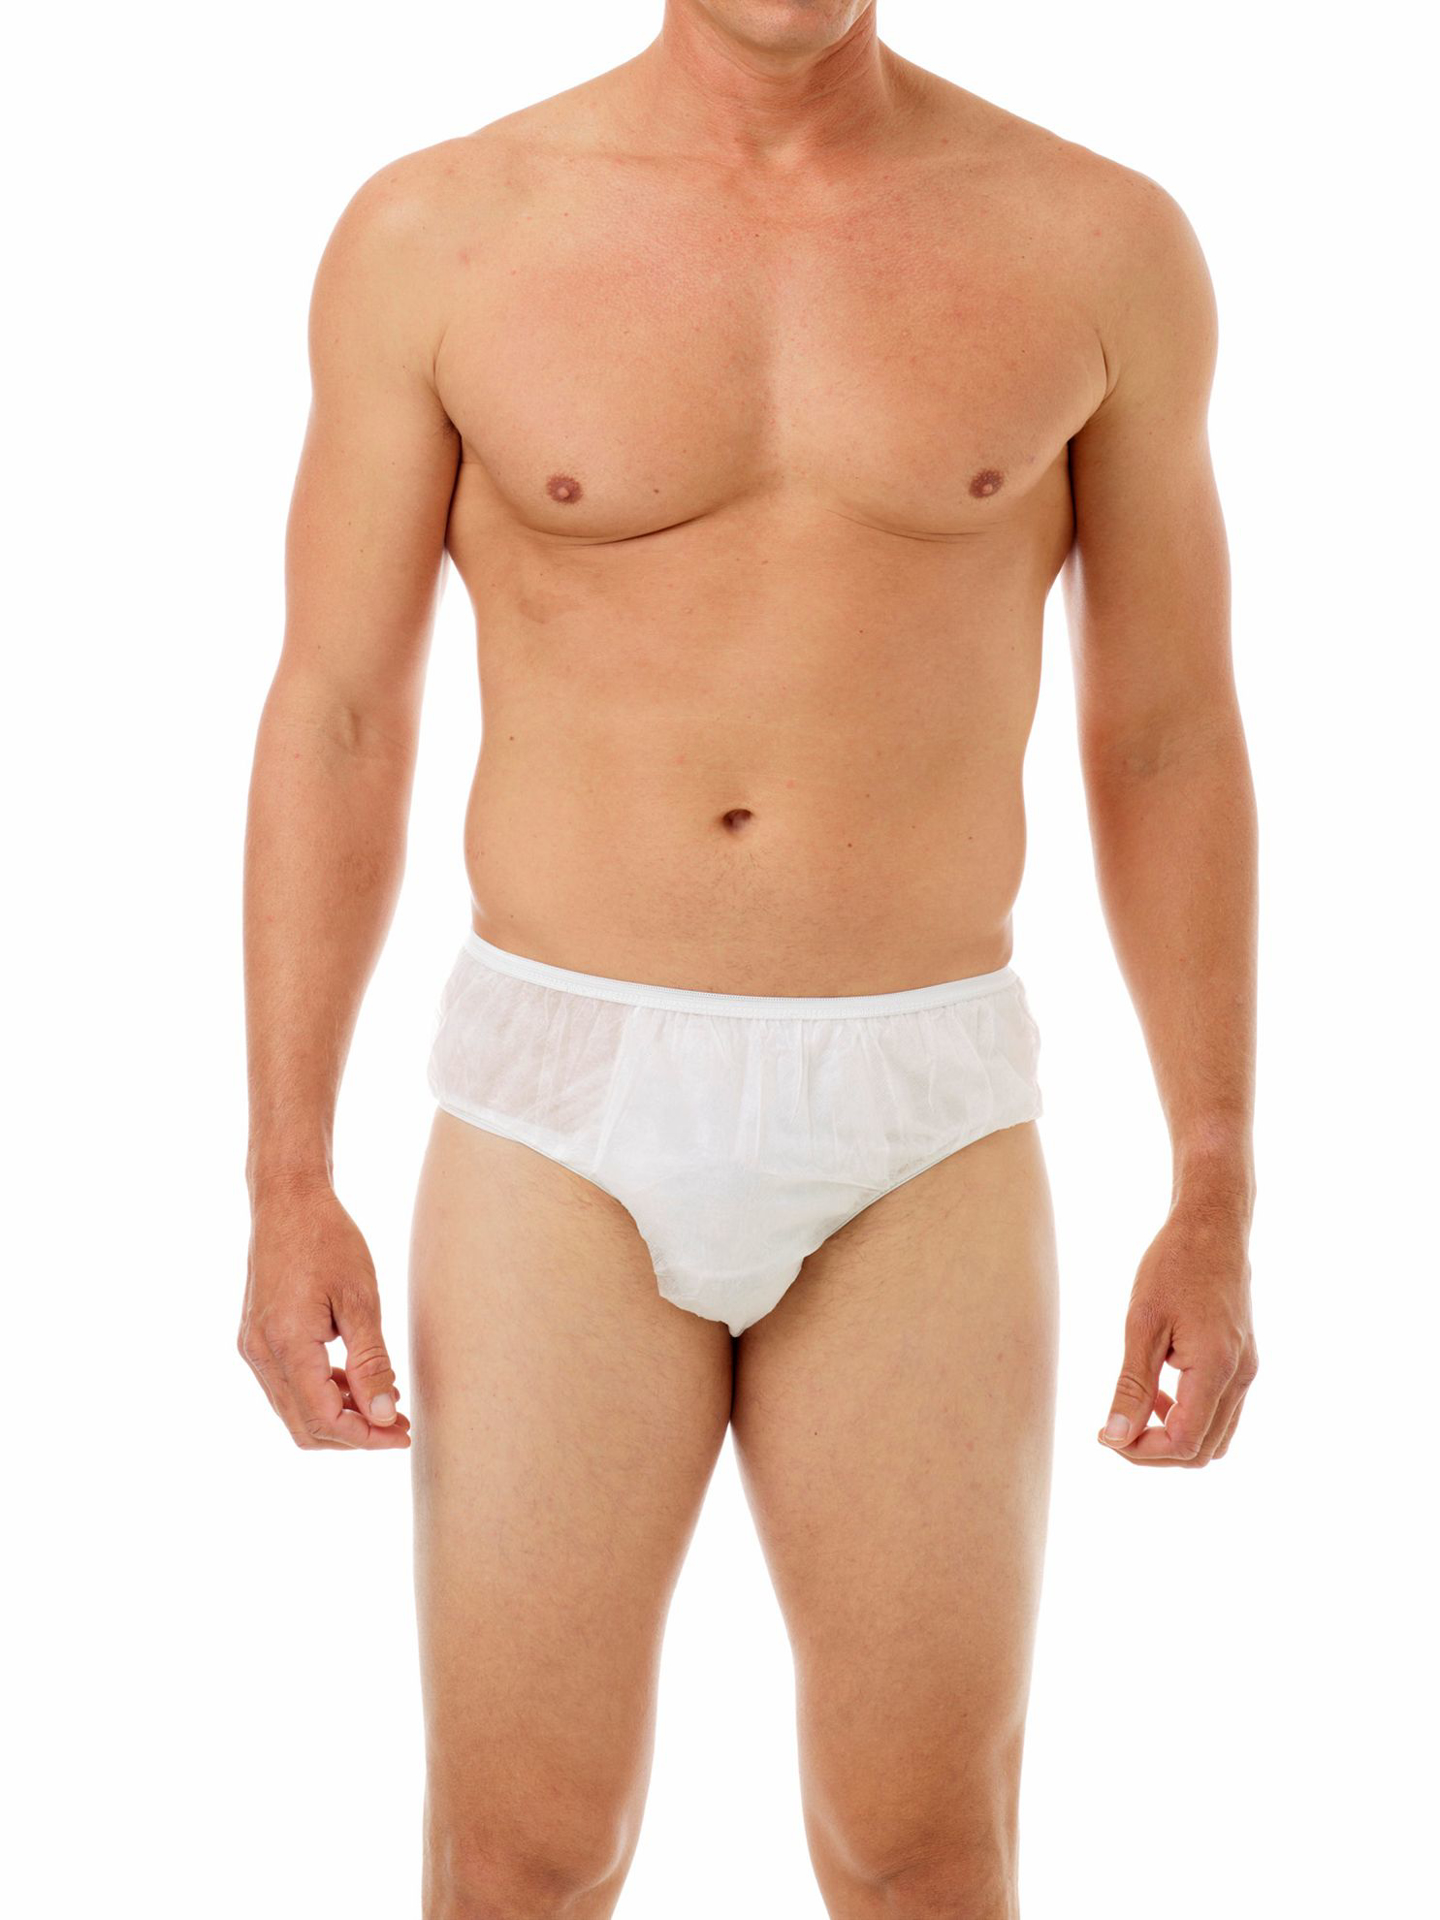 disposable men's underwear